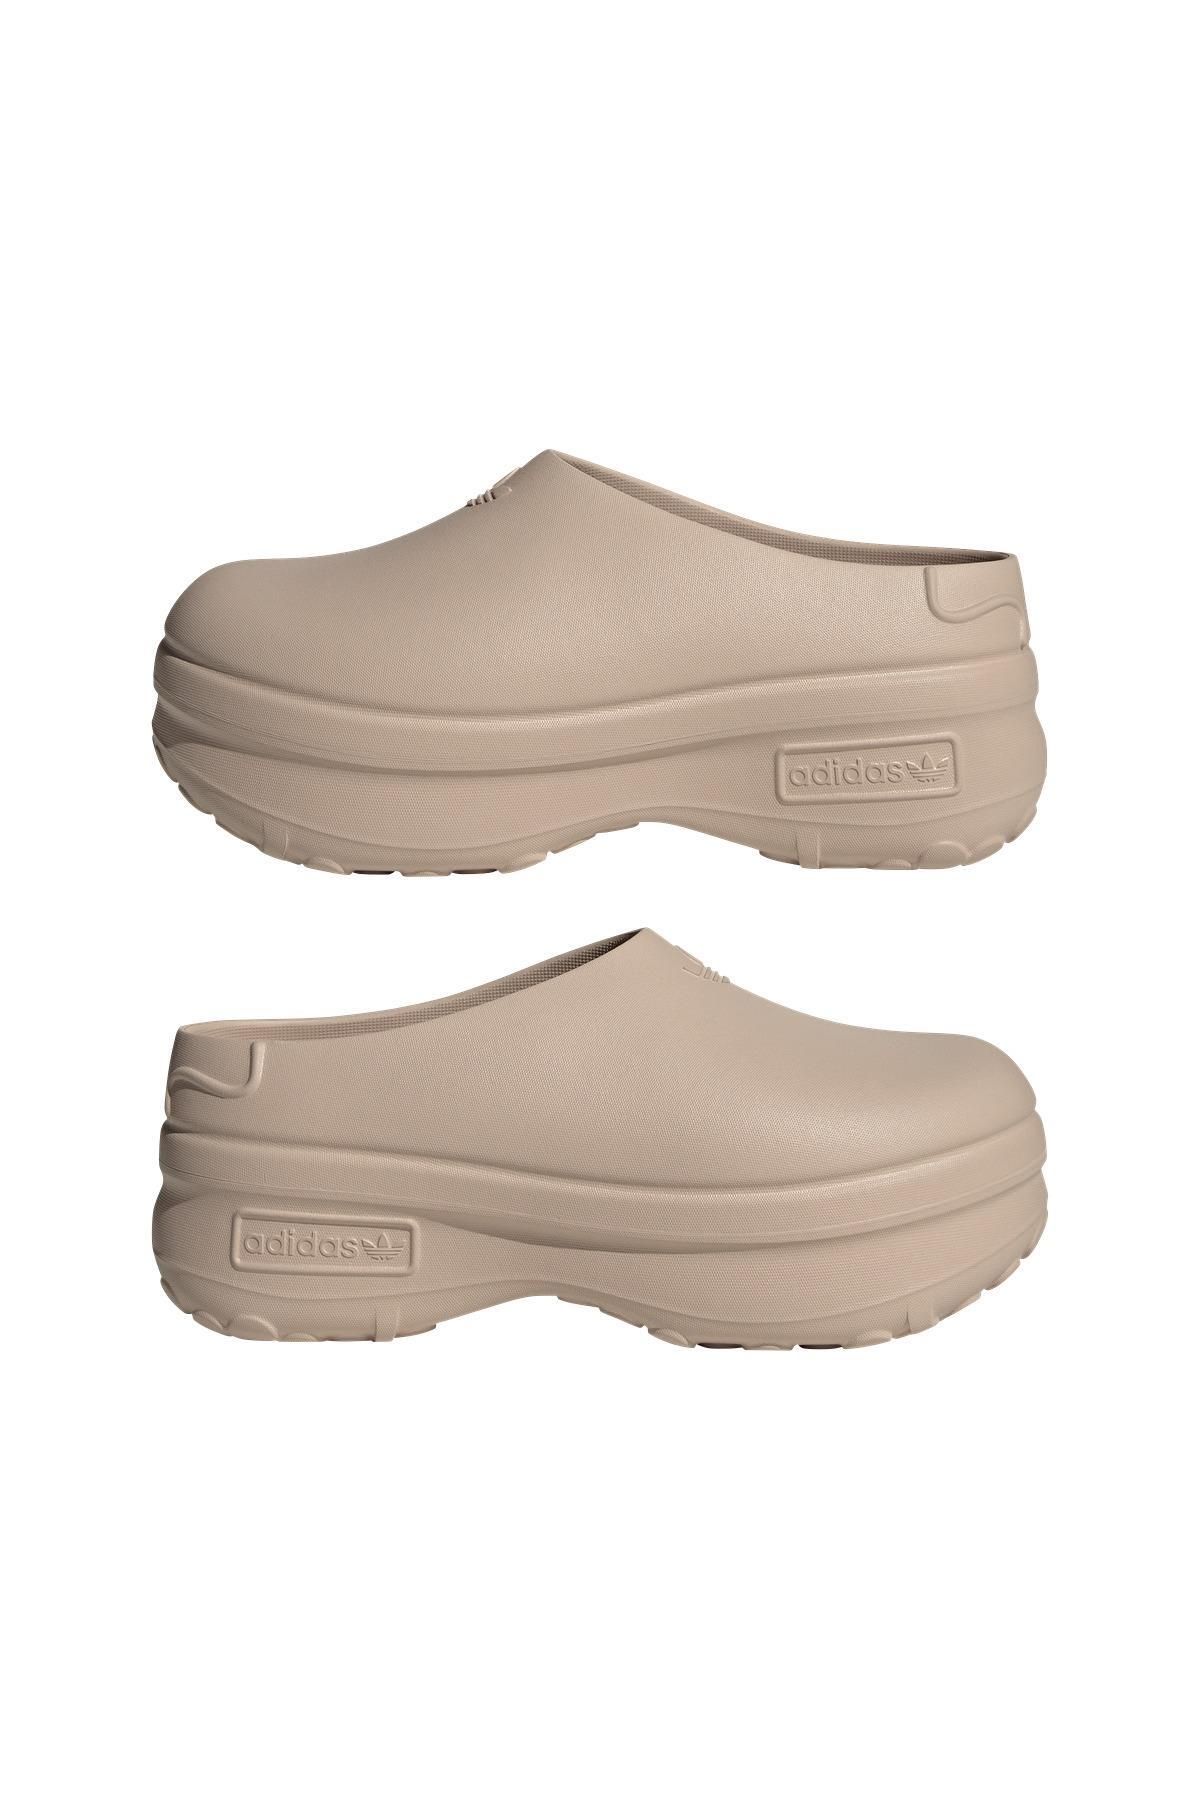 adidas کفش های زن adfom stan mule w IE7052